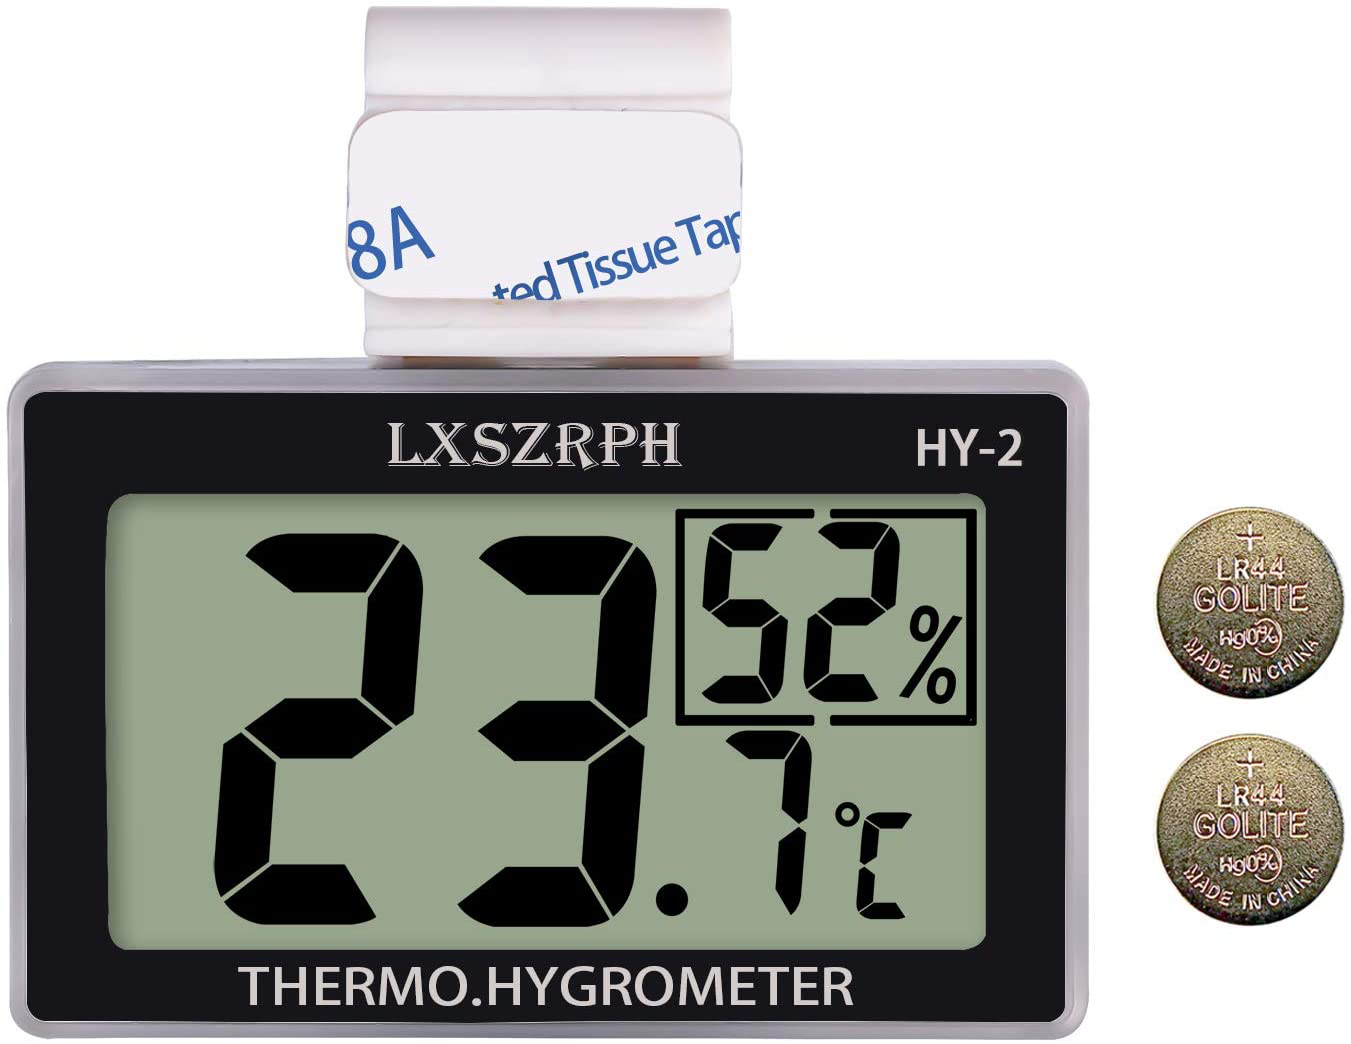 Reptile Terrarium Thermometer Humidity Gauge for Aquarium Tank